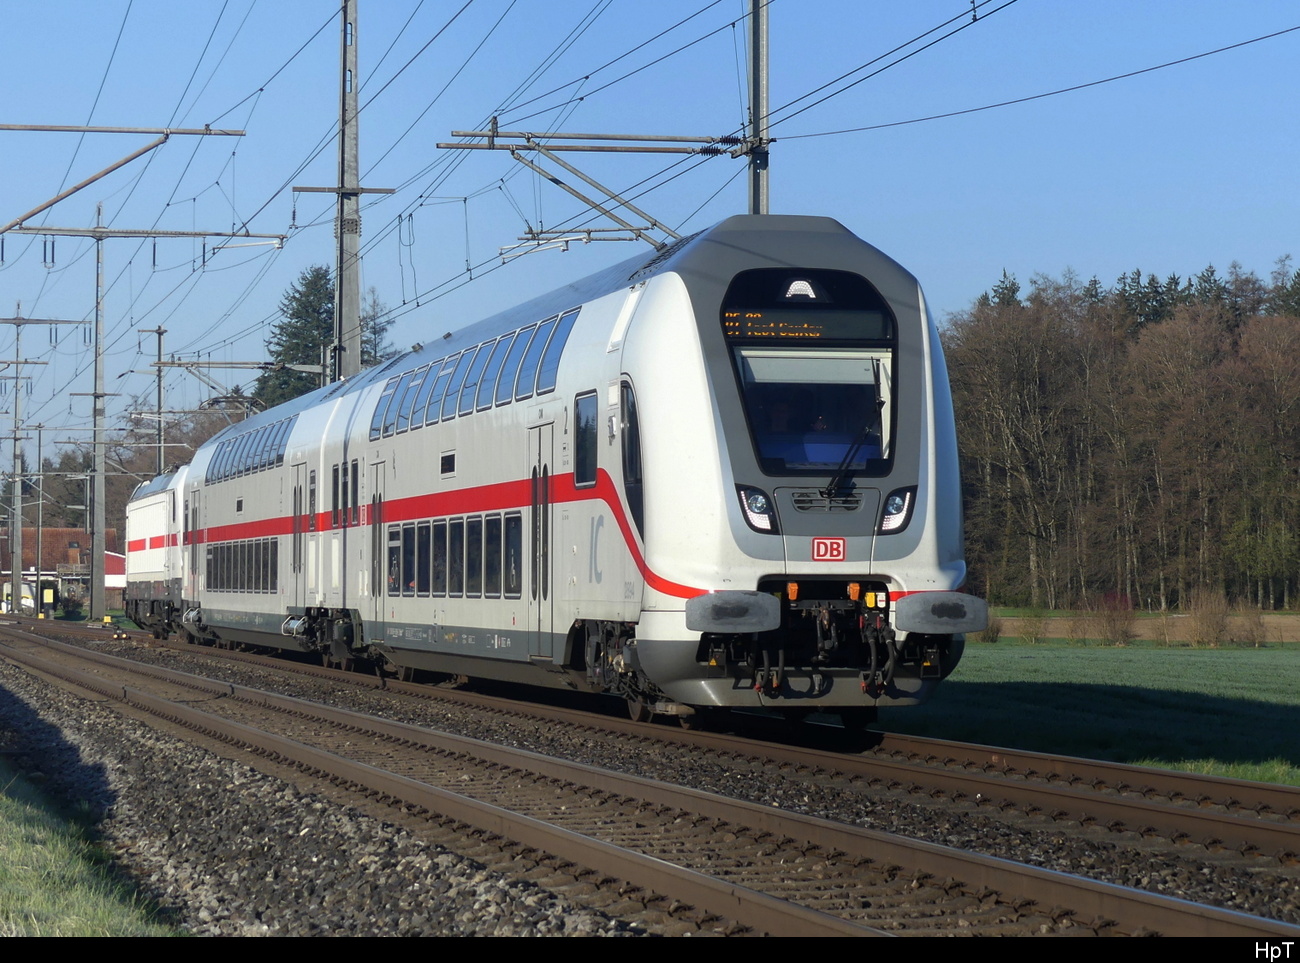 Zufallsfoto des DB Testzug unterwegs auf der Linie Bern - Burgdorf/Olten mit dem Steuerwagen DBptzfa 50 80 86-81 896-2 + Personenwagen DBpza 50 80 26-81 645-6 und am Schluss die Lok 91 80 6 147 558-1 unterwegs bei Lyssach ( BE ) am 05.04.2023